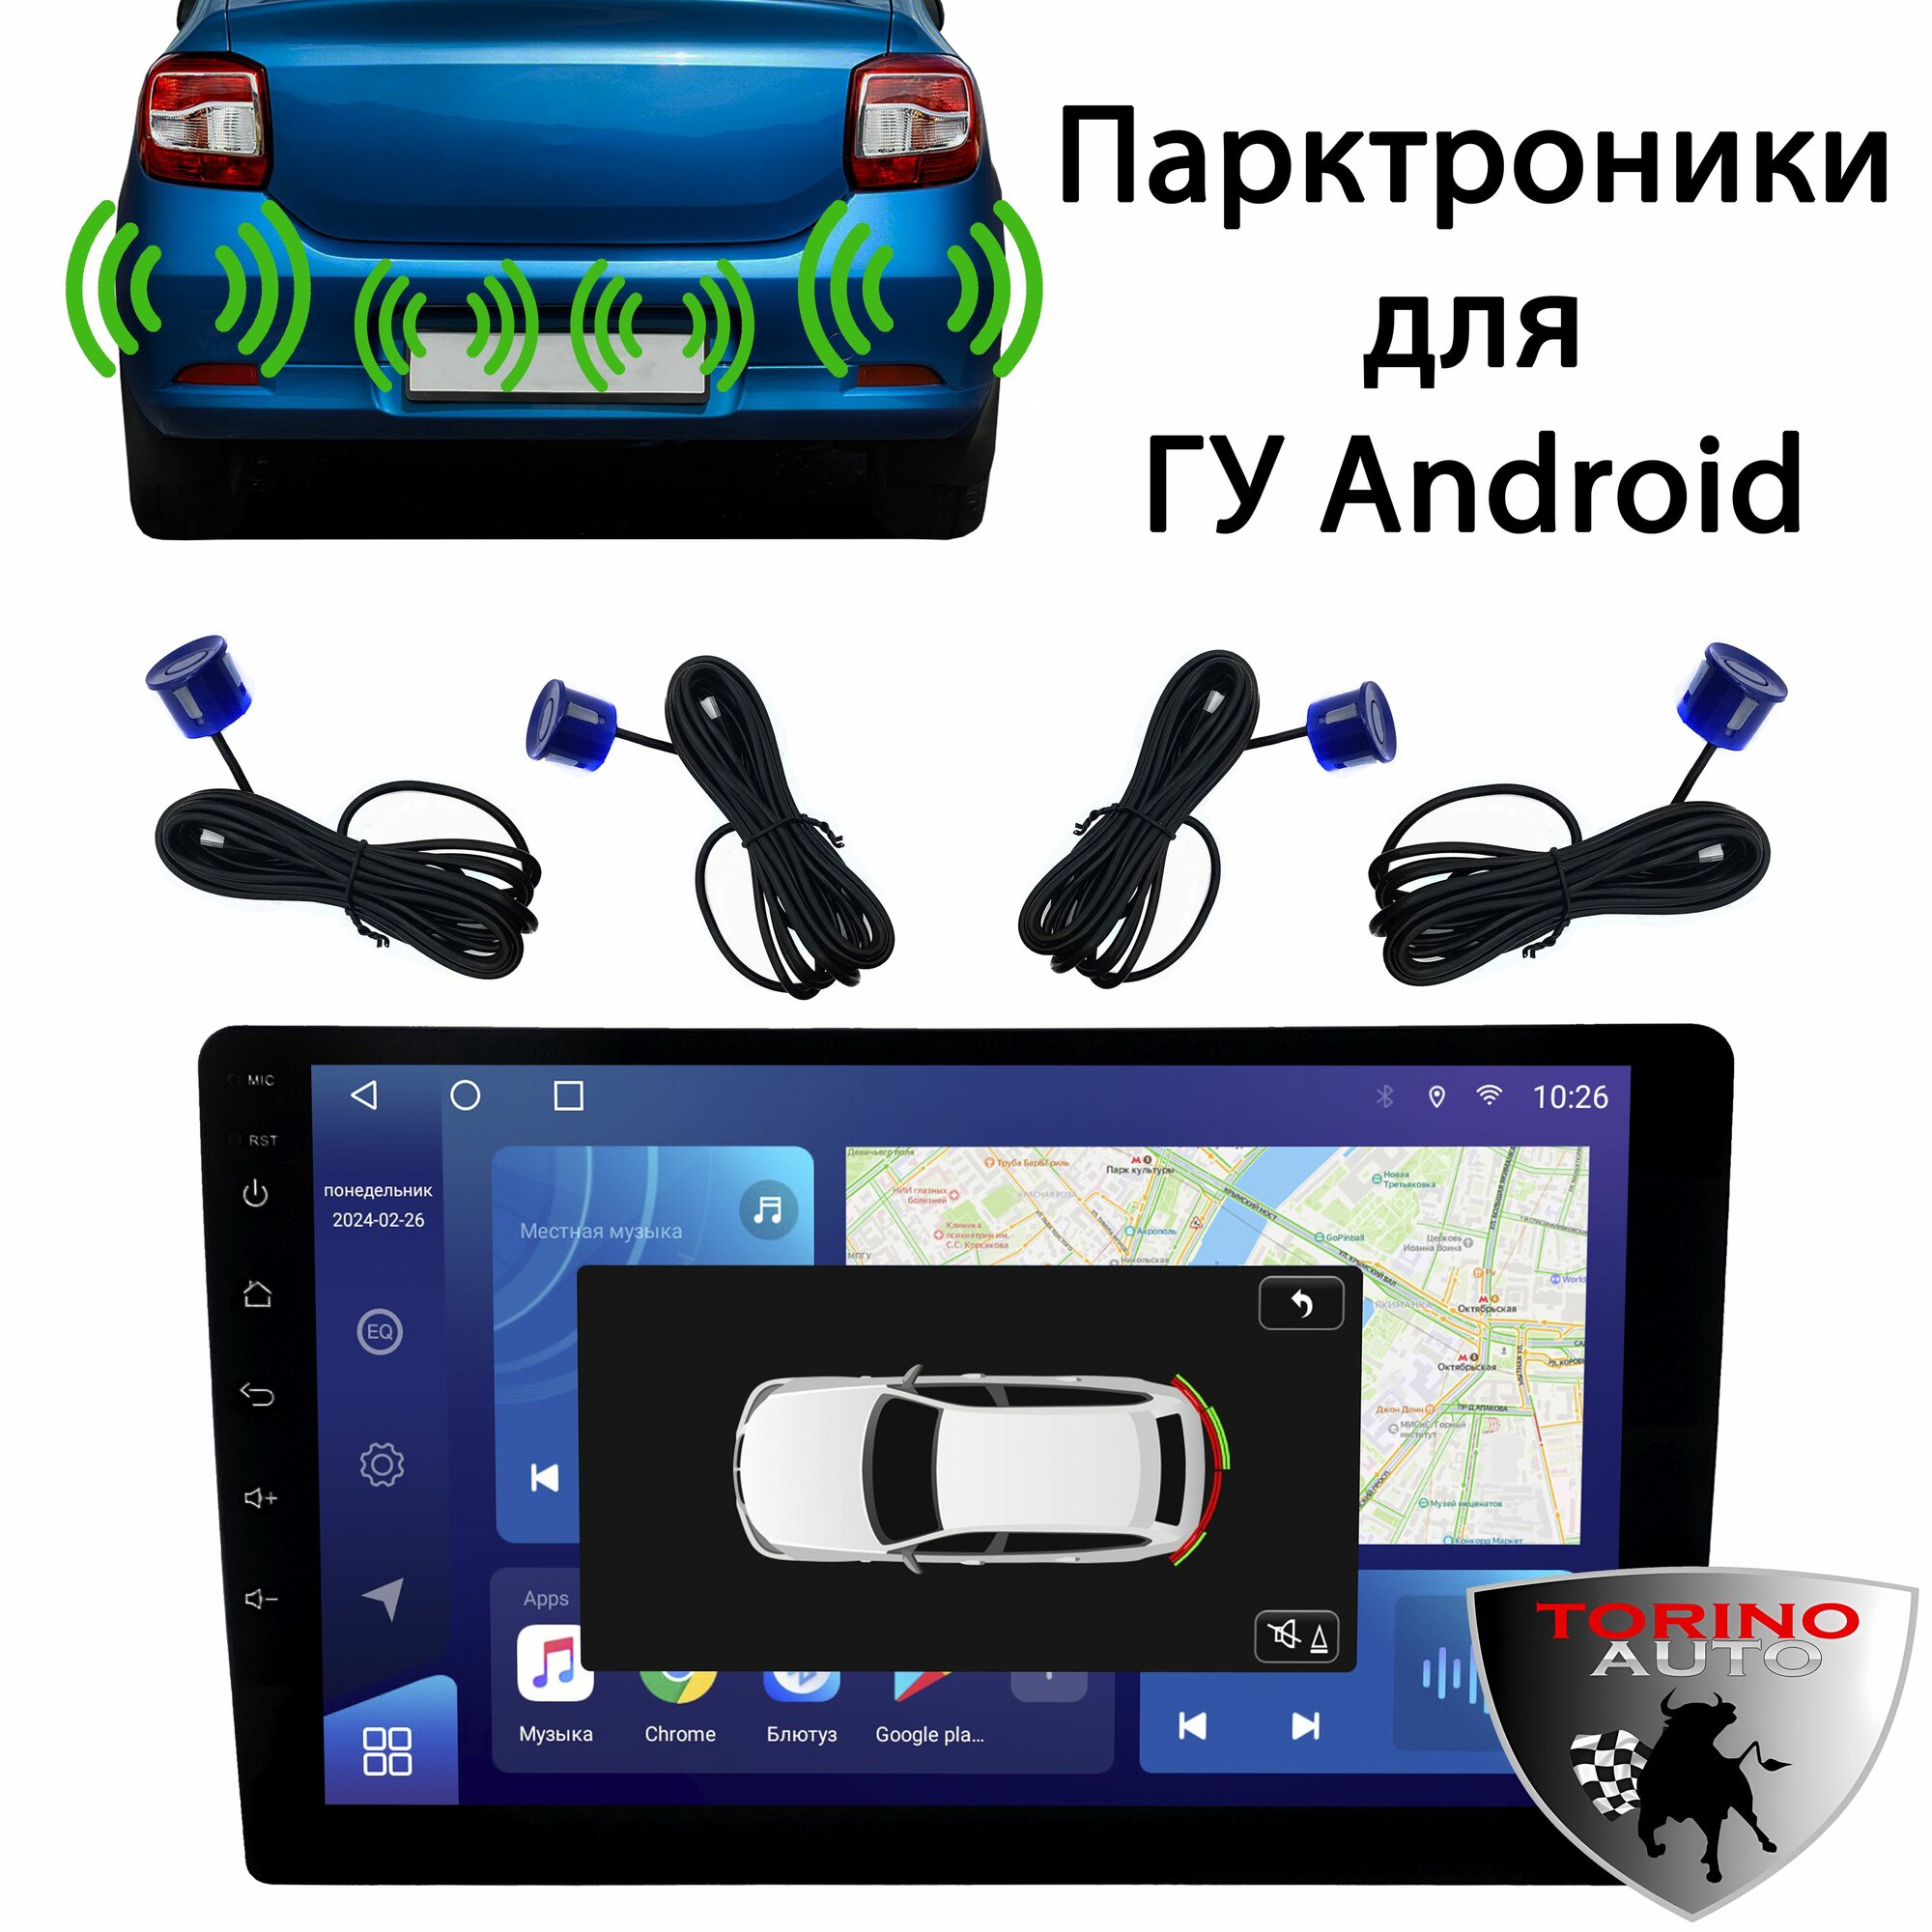 Парктроники цифровые задние для Android магнитол синие / Парковочный радар синие для головных устройств Android